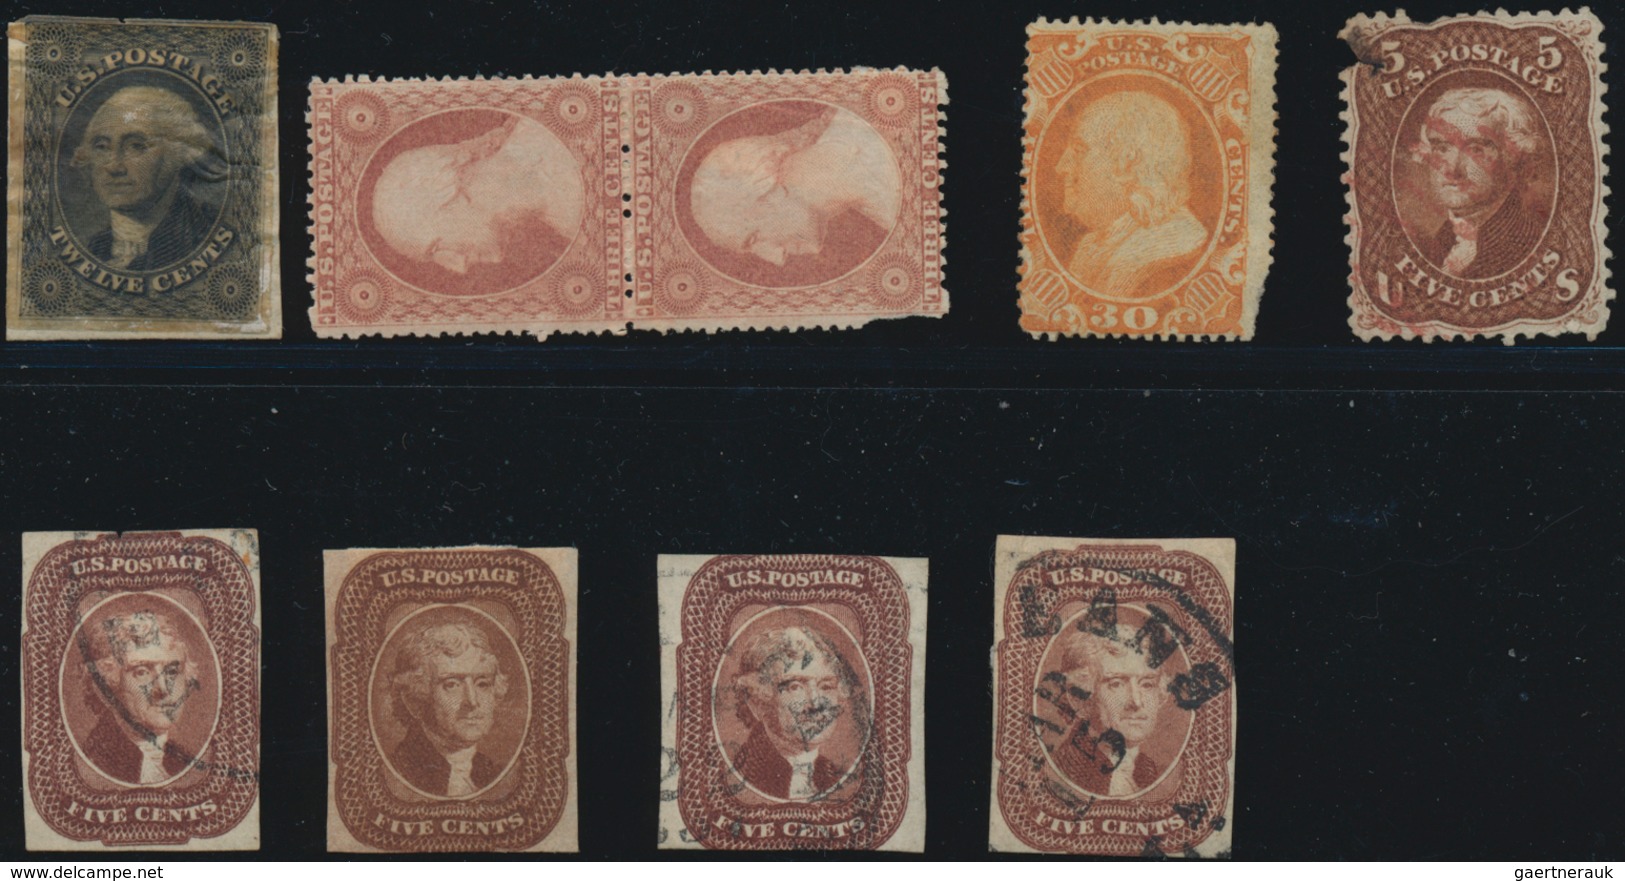 Vereinigte Staaten von Amerika: US 19th Century Group, Scott Nos. 10 (used), 11 (OG pair), 24 (OG st